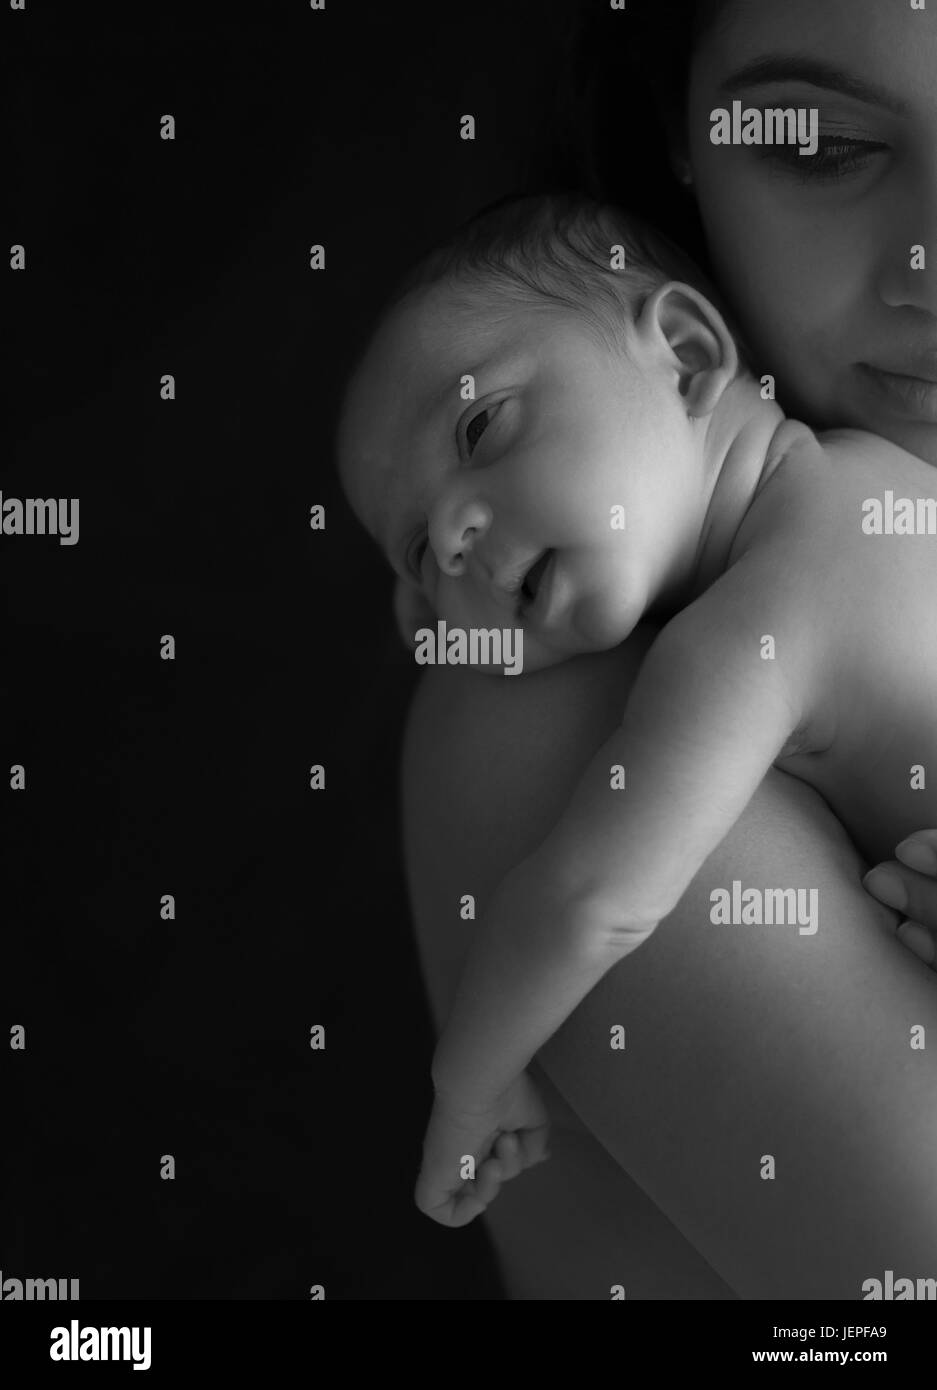 Publicado modelo fotografía de un bebé recién nacido niño sonriendo mientras descansaba su cabeza sobre los hombros de su madre Foto de stock